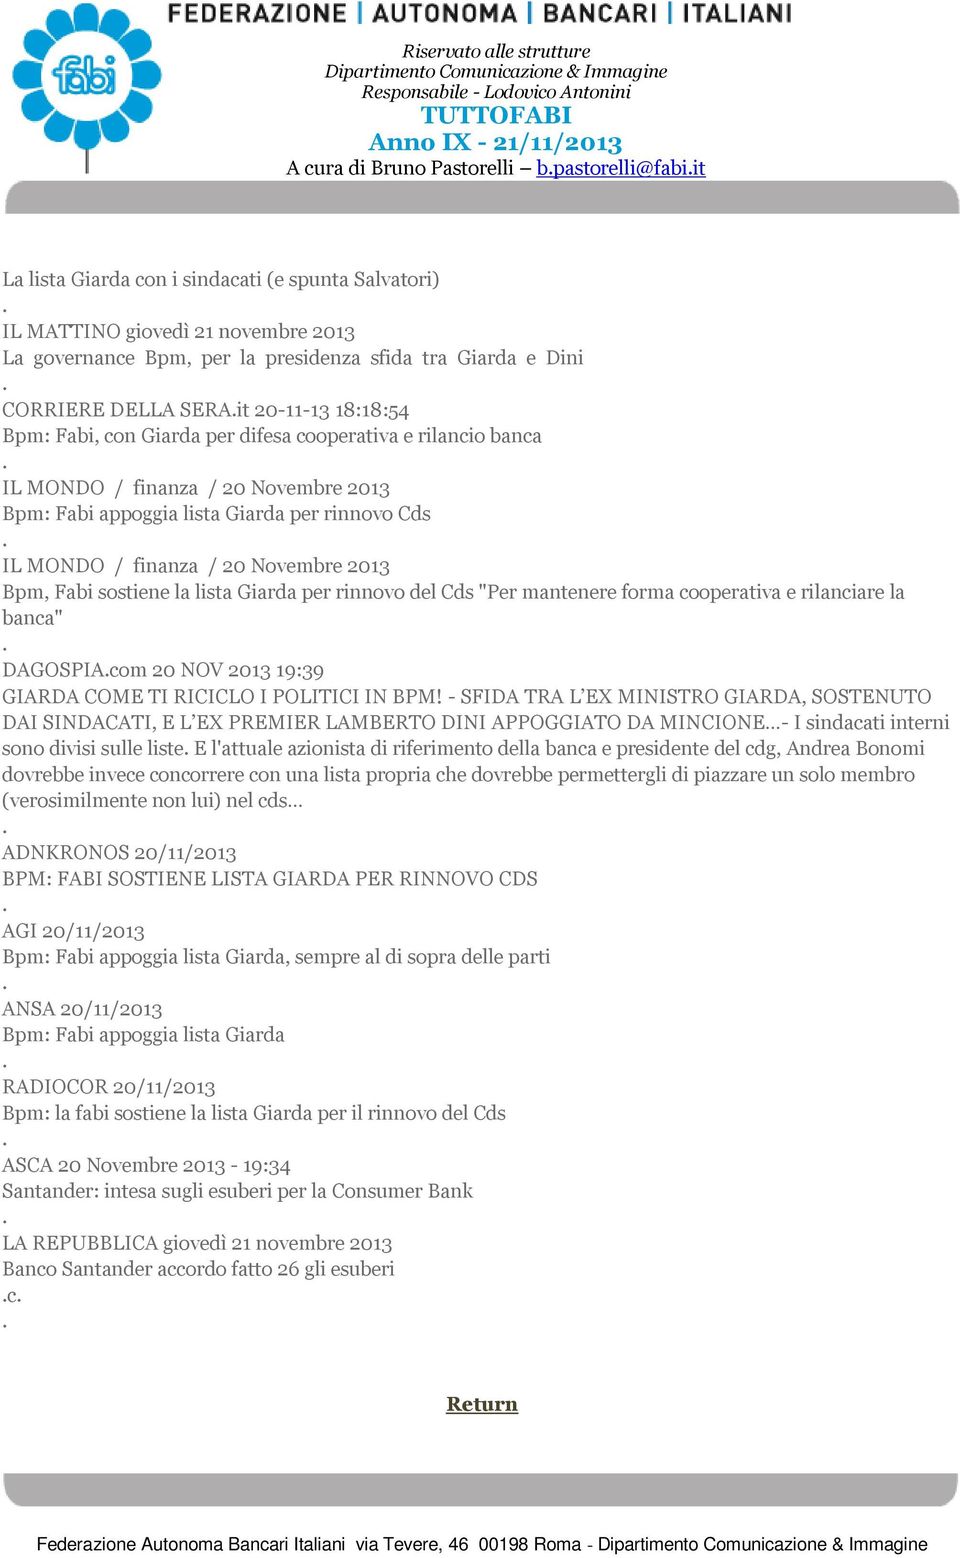 finanza / 20 Novembre 2013 Bpm, Fabi sostiene la lista Giarda per rinnovo del Cds "Per mantenere forma cooperativa e rilanciare la banca" DAGOSPIAcom 20 NOV 2013 19:39 GIARDA COME TI RICICLO I